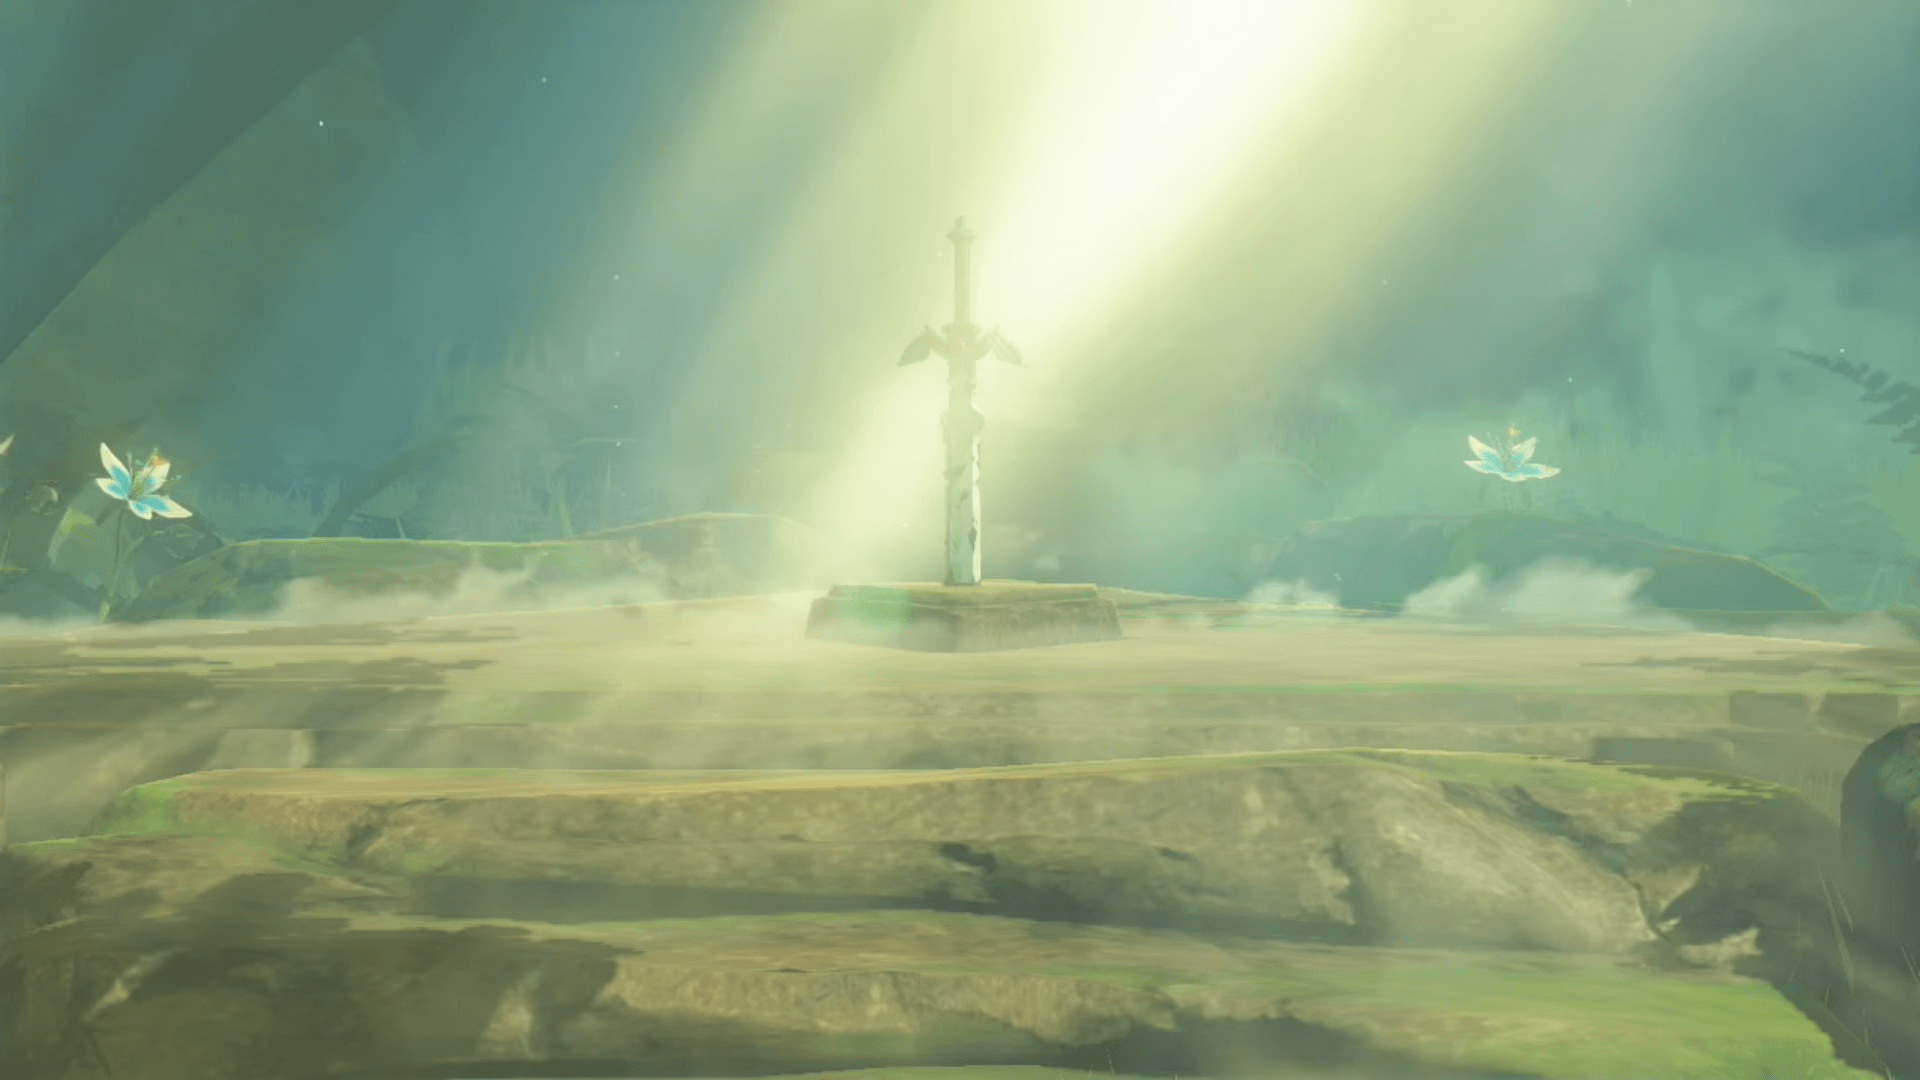 The Legend of Zelda: Breath of the Wild Wallpapers